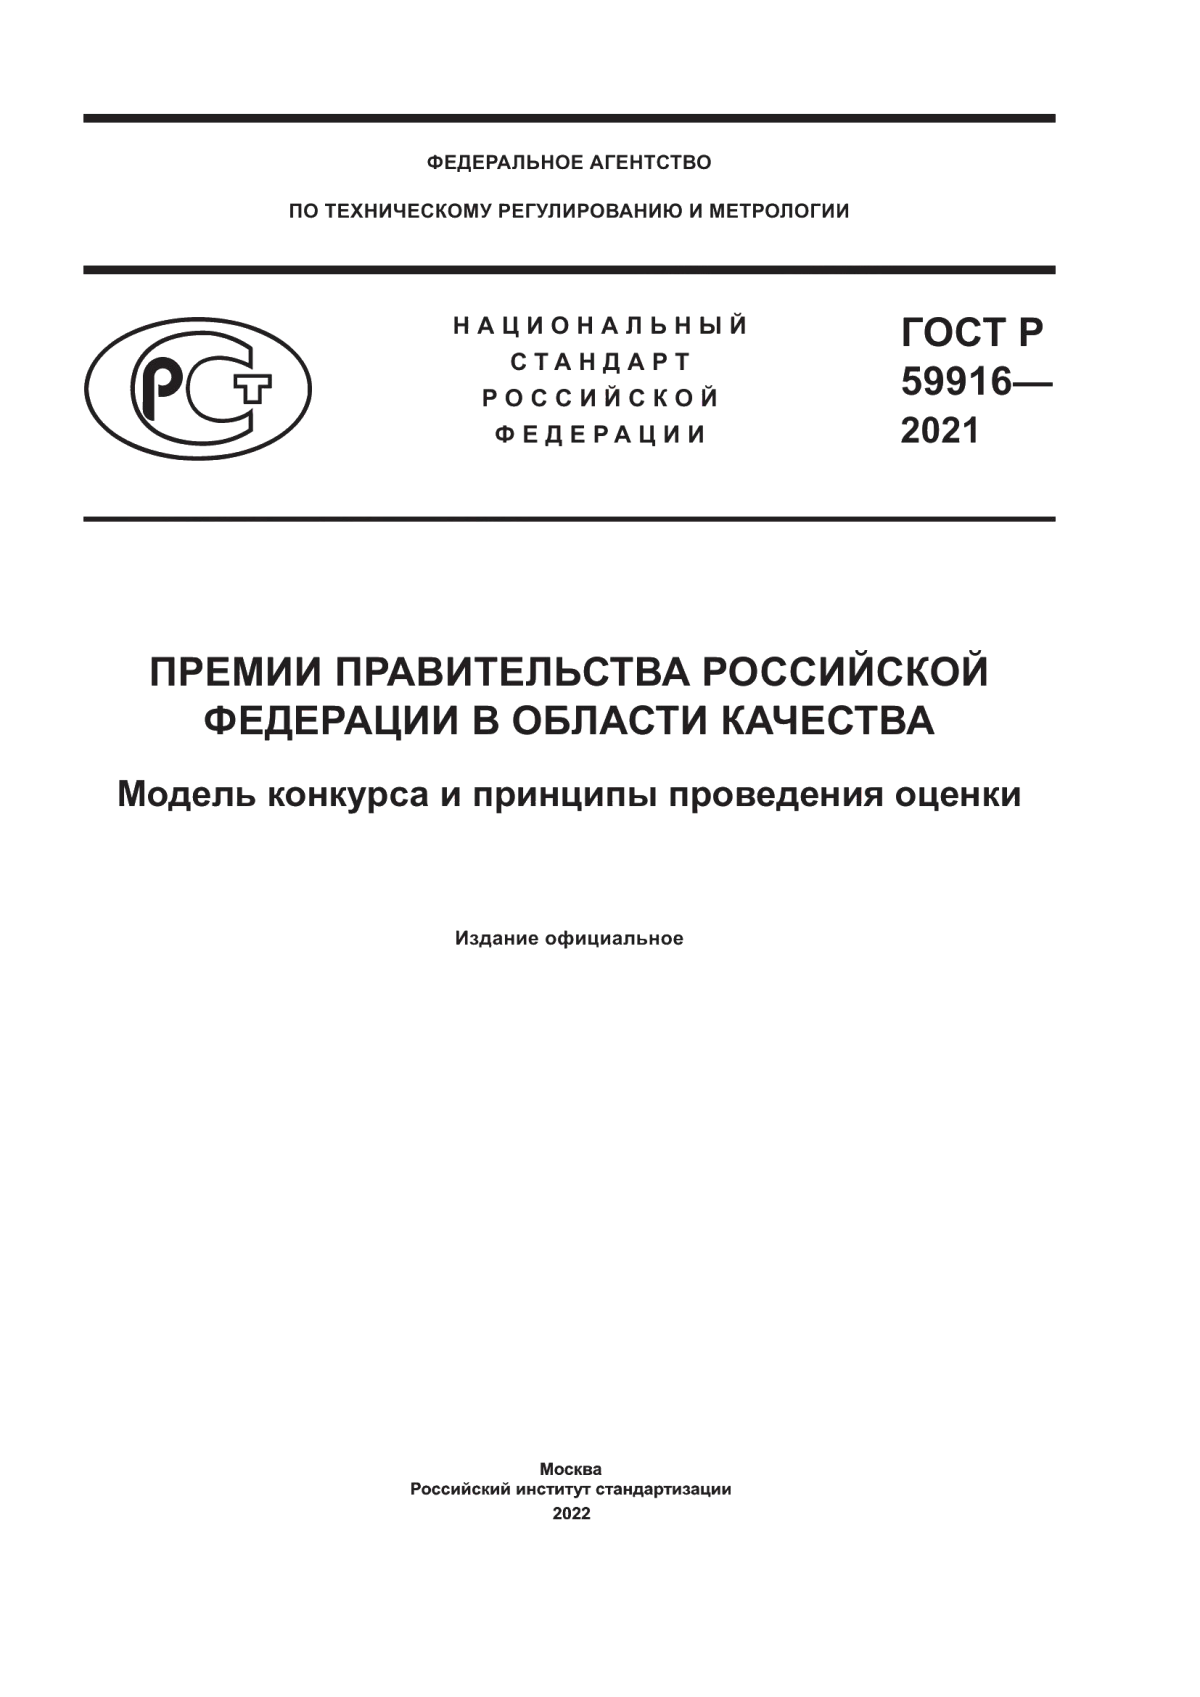 ГОСТ Р 59916-2021 Премии Правительства Российской Федерации в области качества. Модель конкурса и принципы проведения оценки